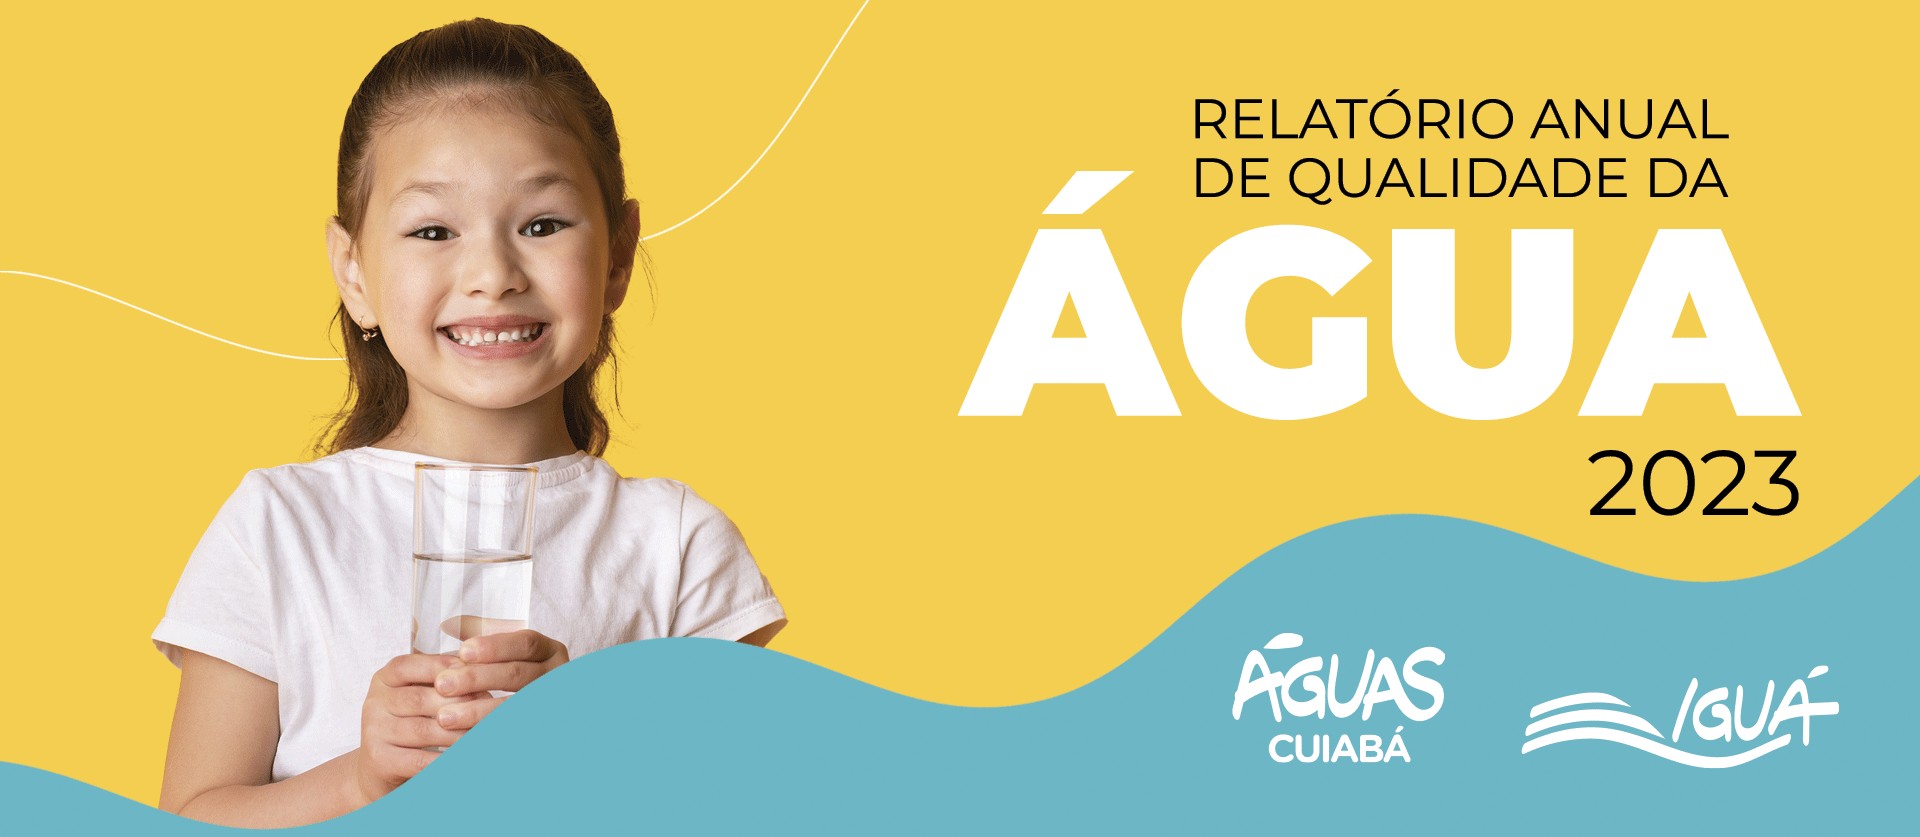 Águas Cuiabá disponibiliza Relatório de Qualidade da Água 2023